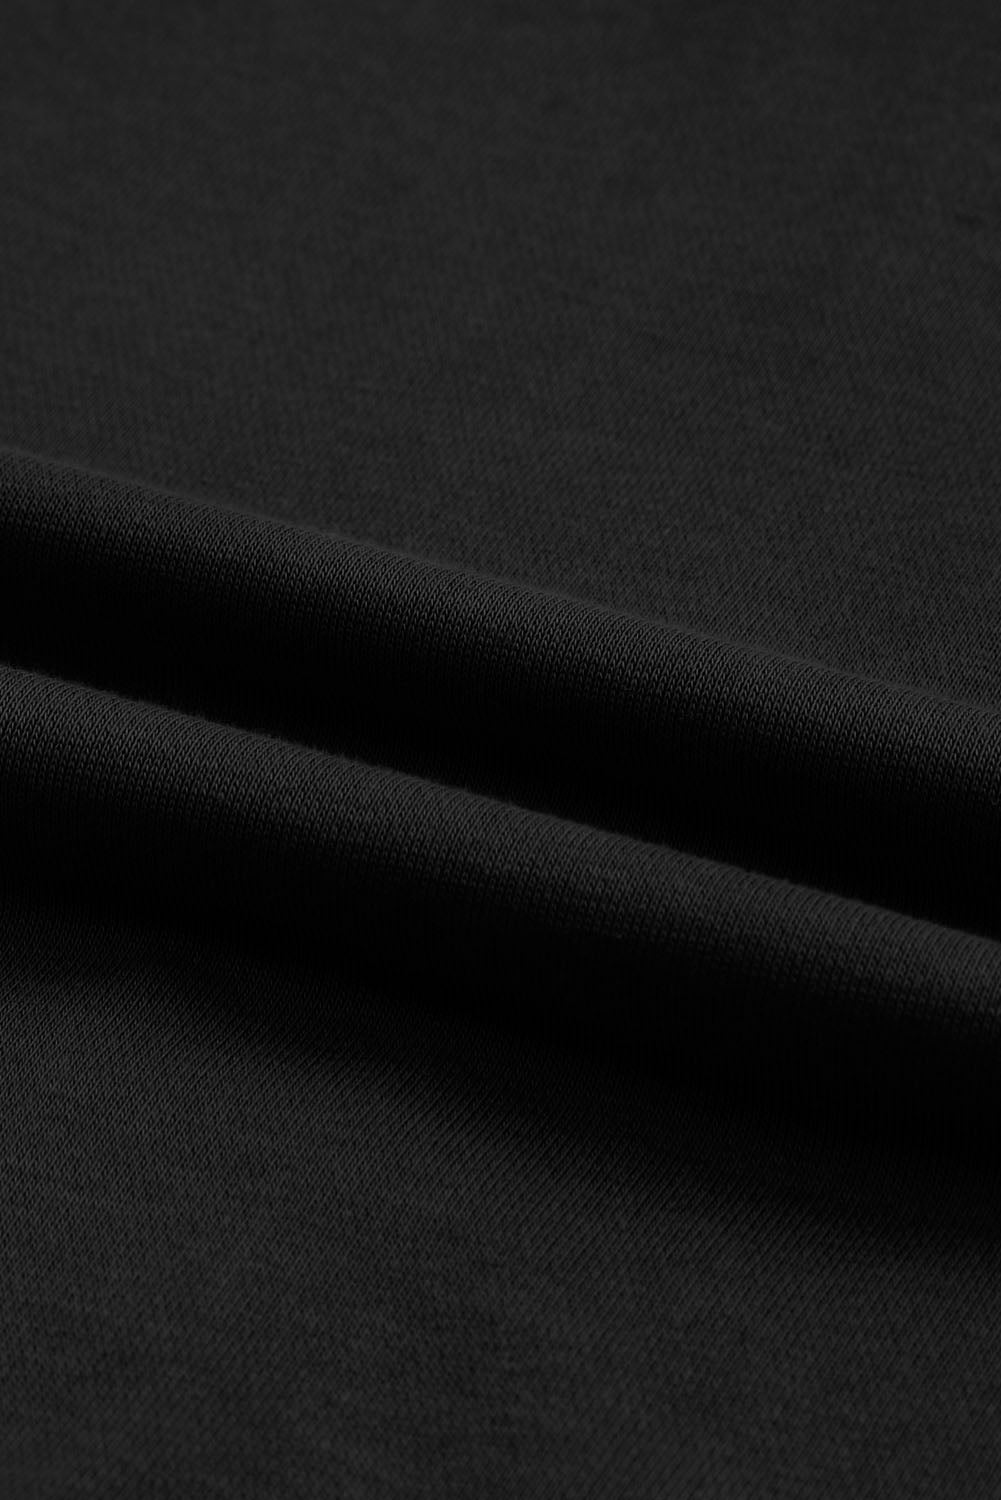 Schwarzer Kapuzenpullover mit offenem Rand und freiliegenden Nähten und durchgehendem Reißverschluss